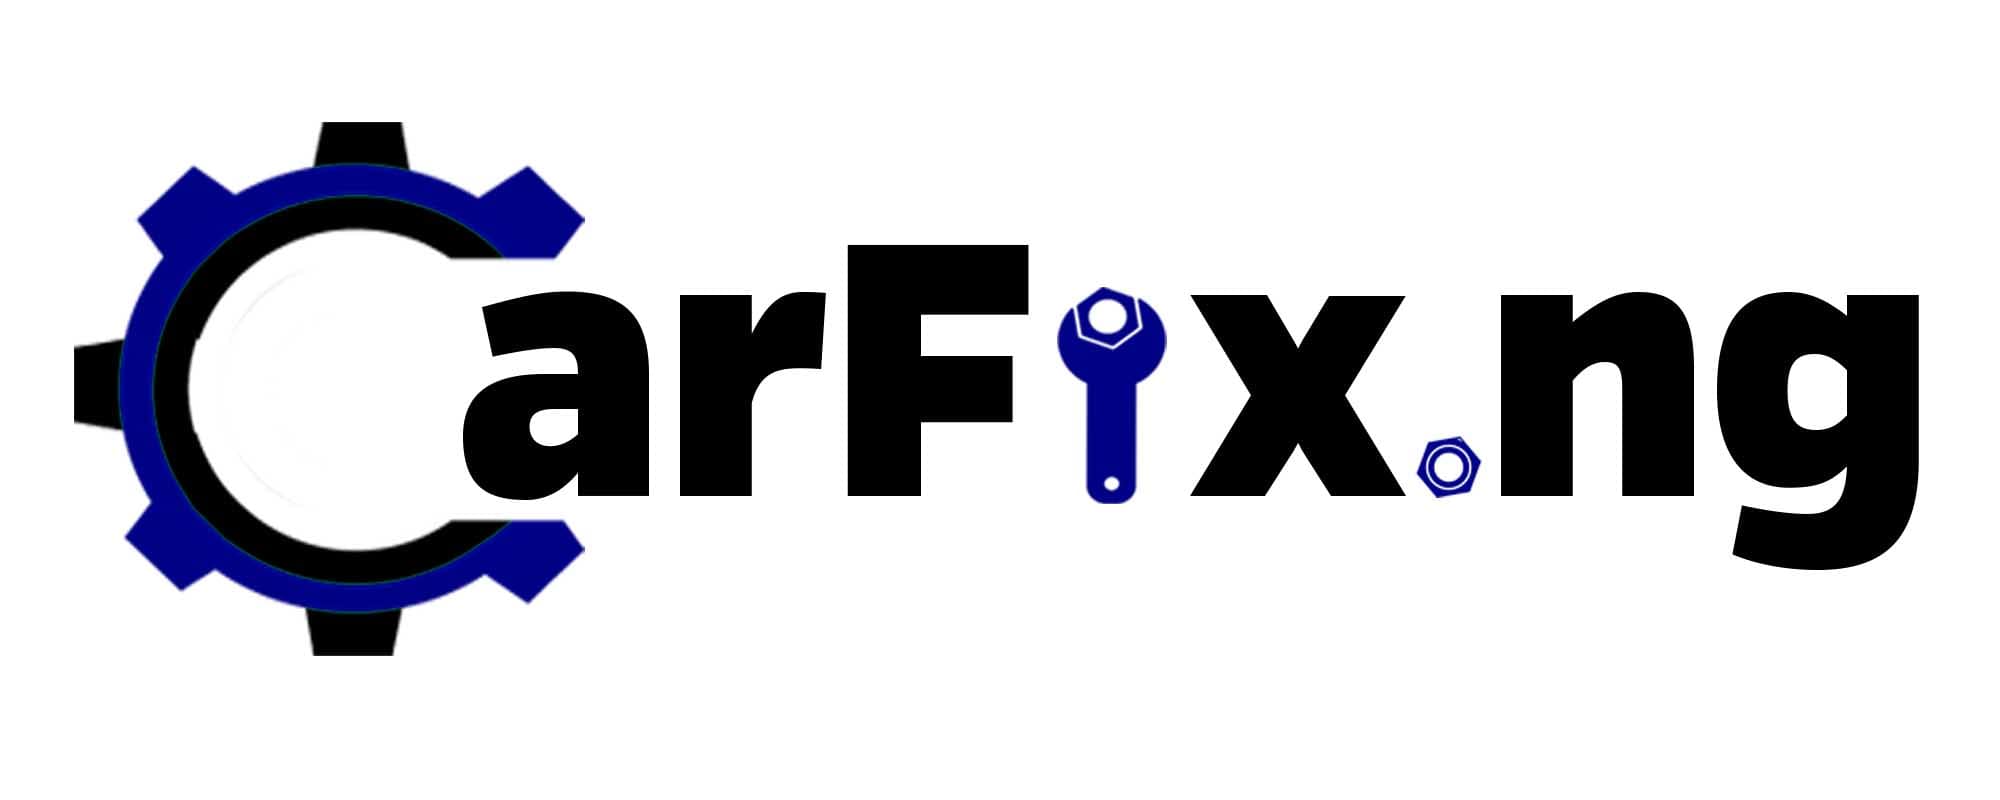 CarFix Vehicle Repairs